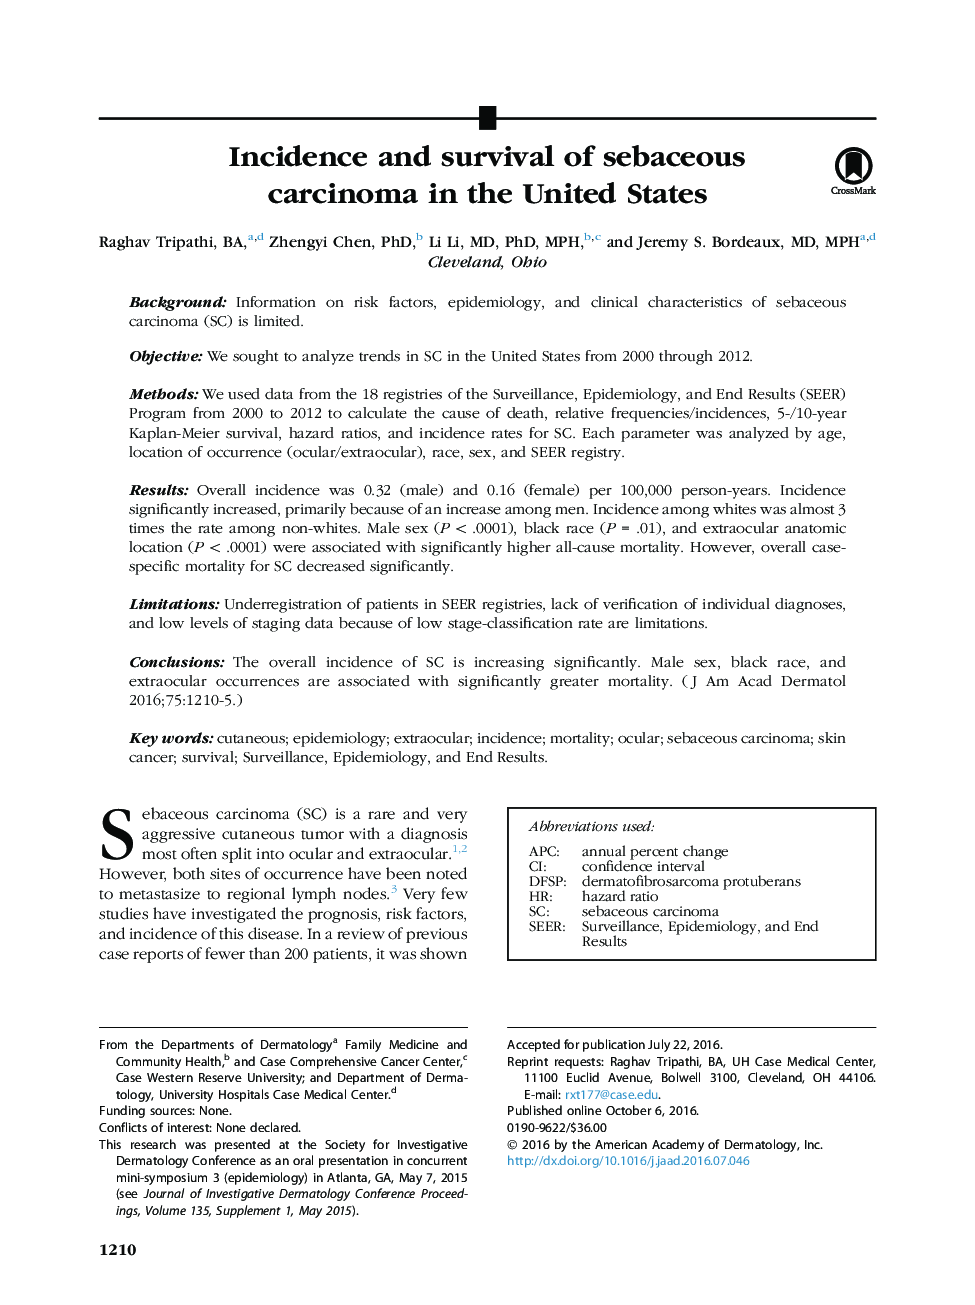 بروز و بقا کارسینومای سباسه در ایالات متحده 